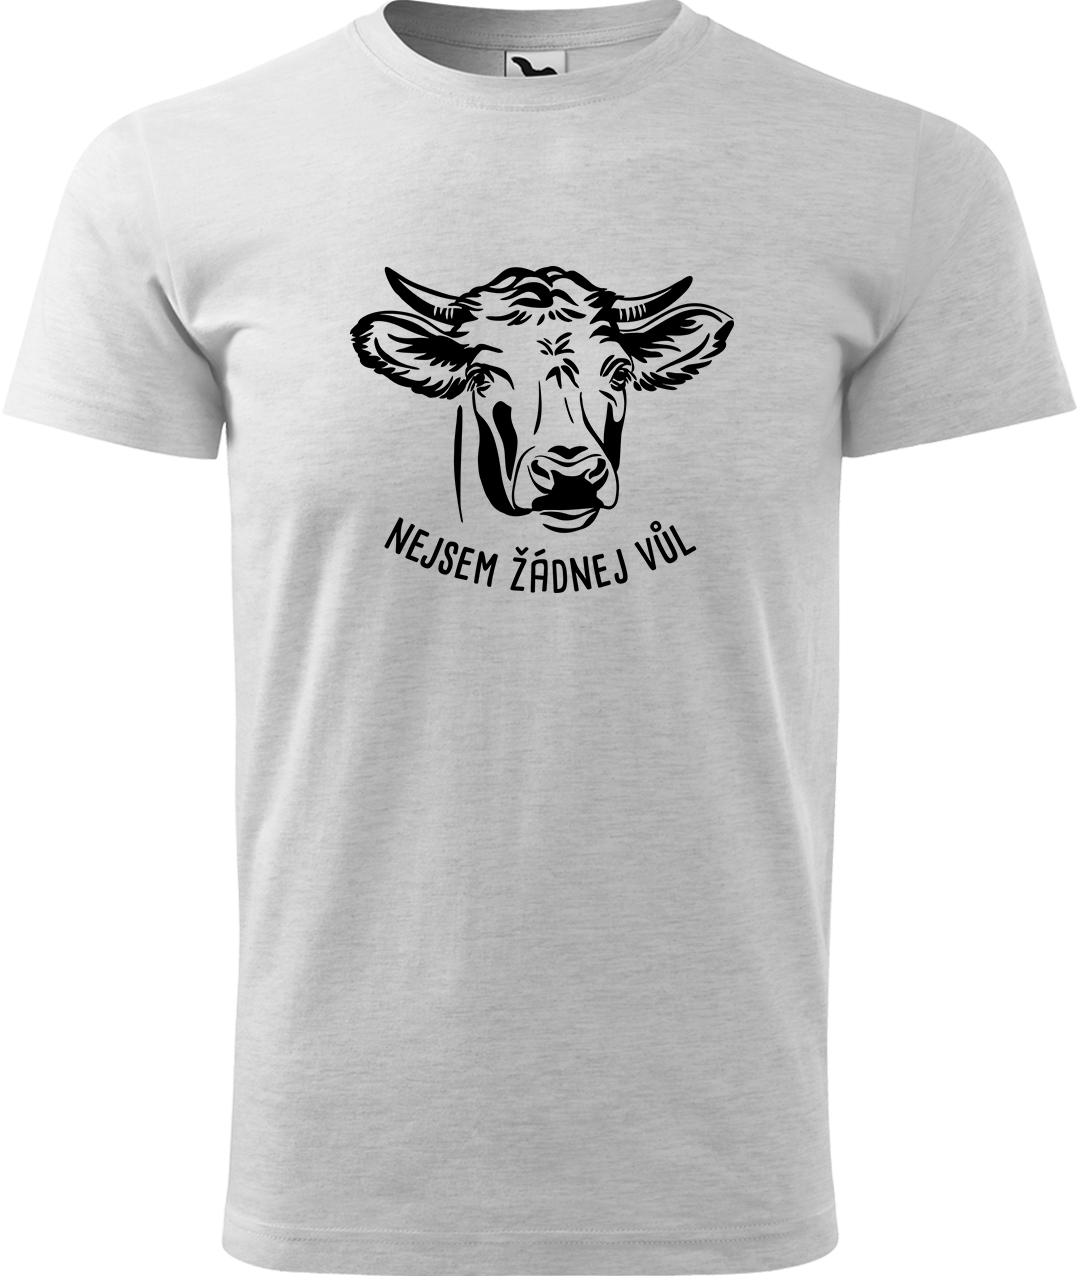 Pánské tričko s krávou - Nejsem žádnej vůl Velikost: L, Barva: Světle šedý melír (03), Střih: pánský